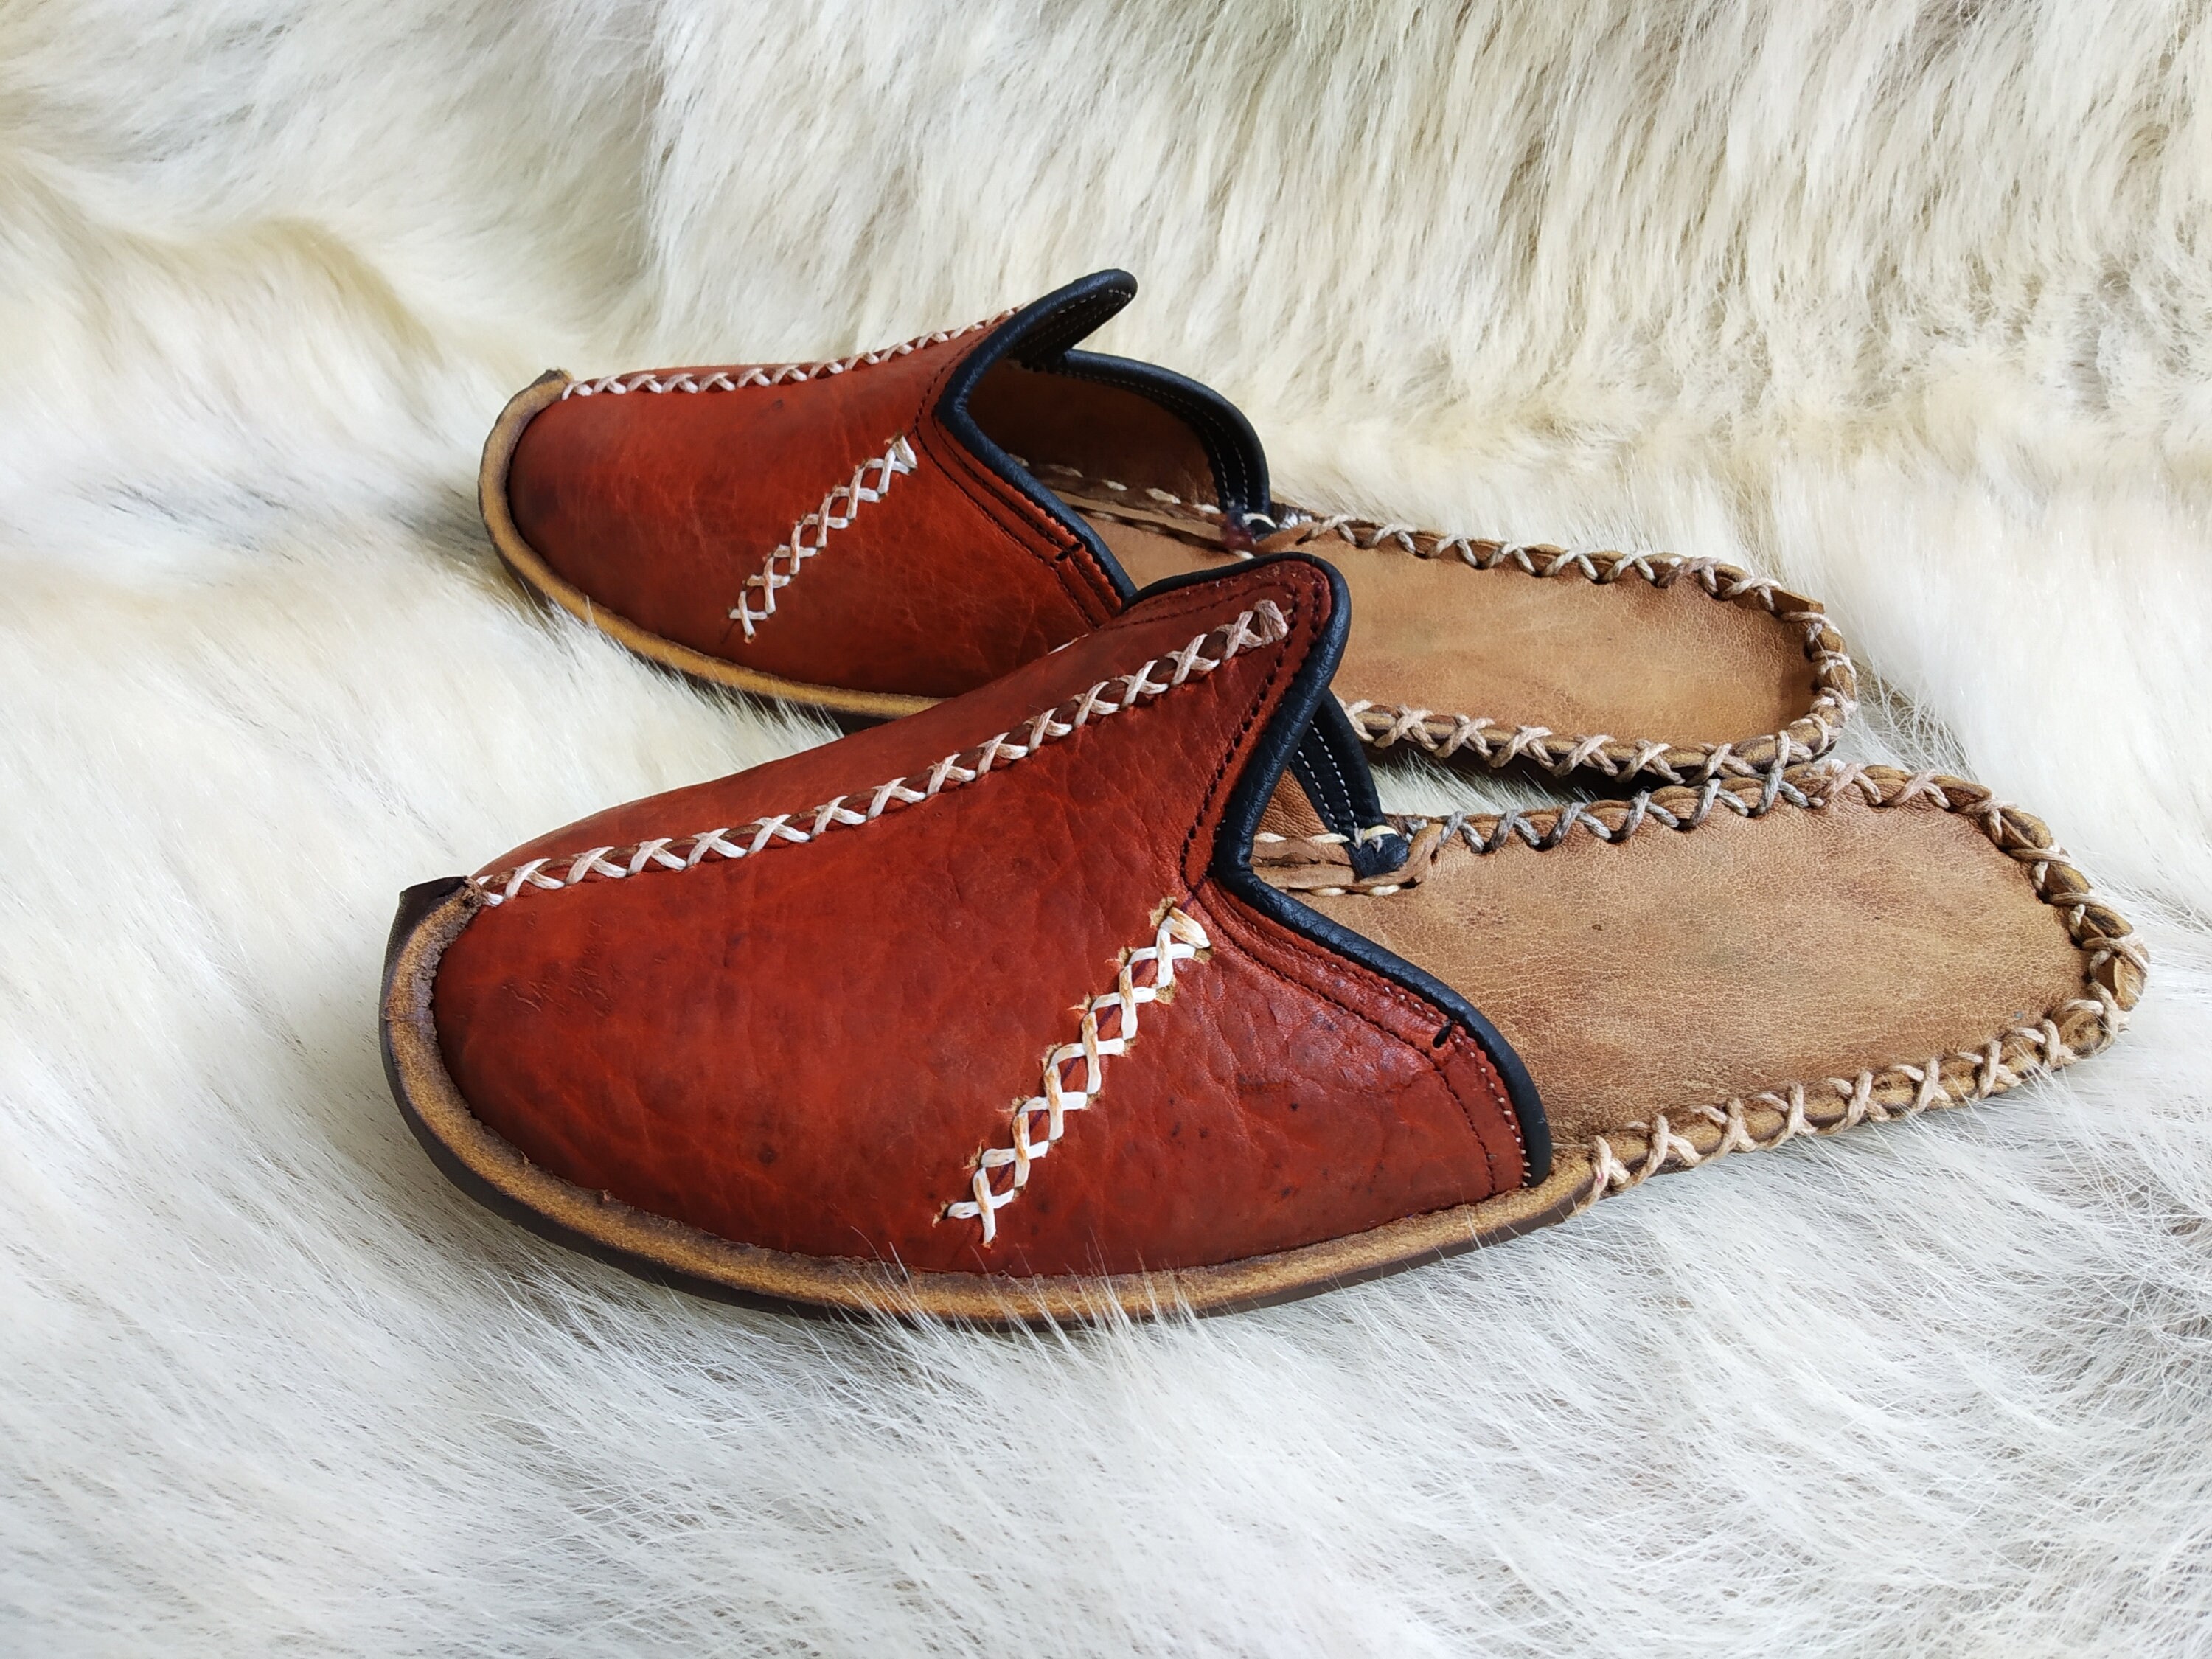 Slip-On Schoenen Herenschoenen sloffen Natuurlijke MANNEN ZWART GLADDE Turkse echt leder handgemaakte Jemenitische schoenen Kleurrijke Slippers 